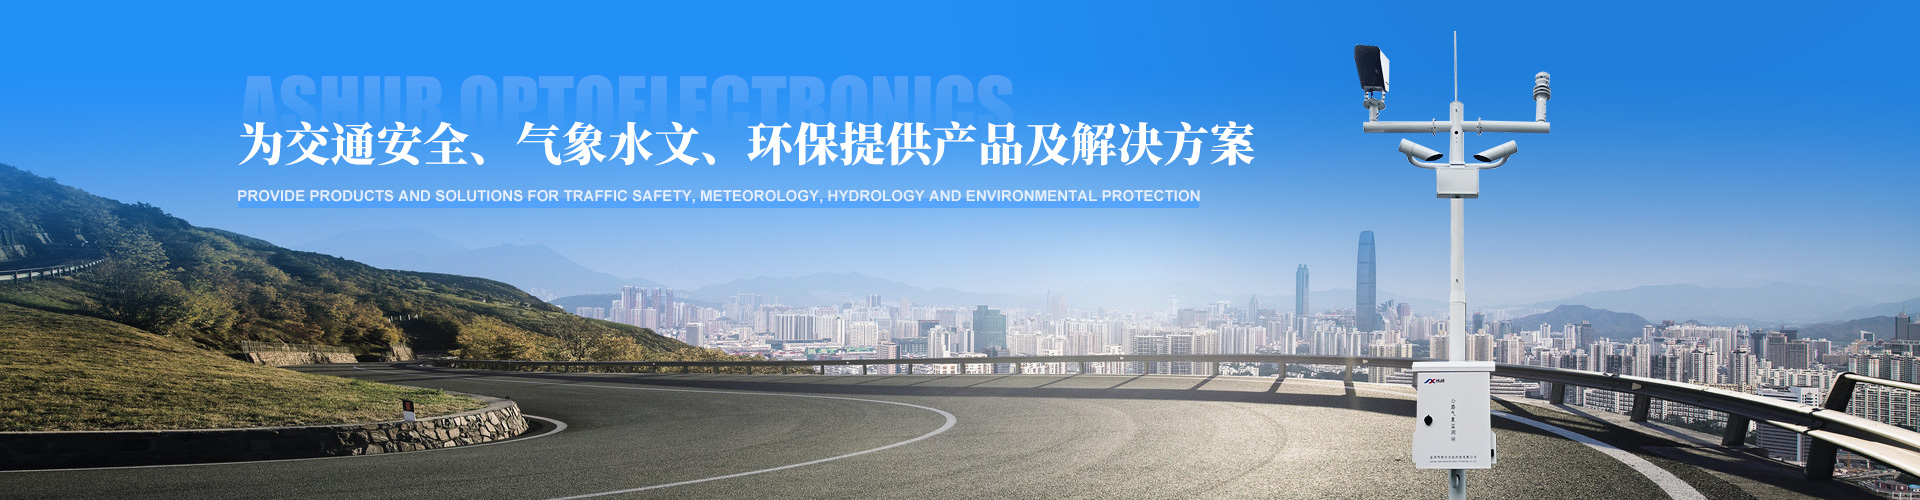 阿舒爾即將參加2023年中國氣象現代化建設科技博覽會